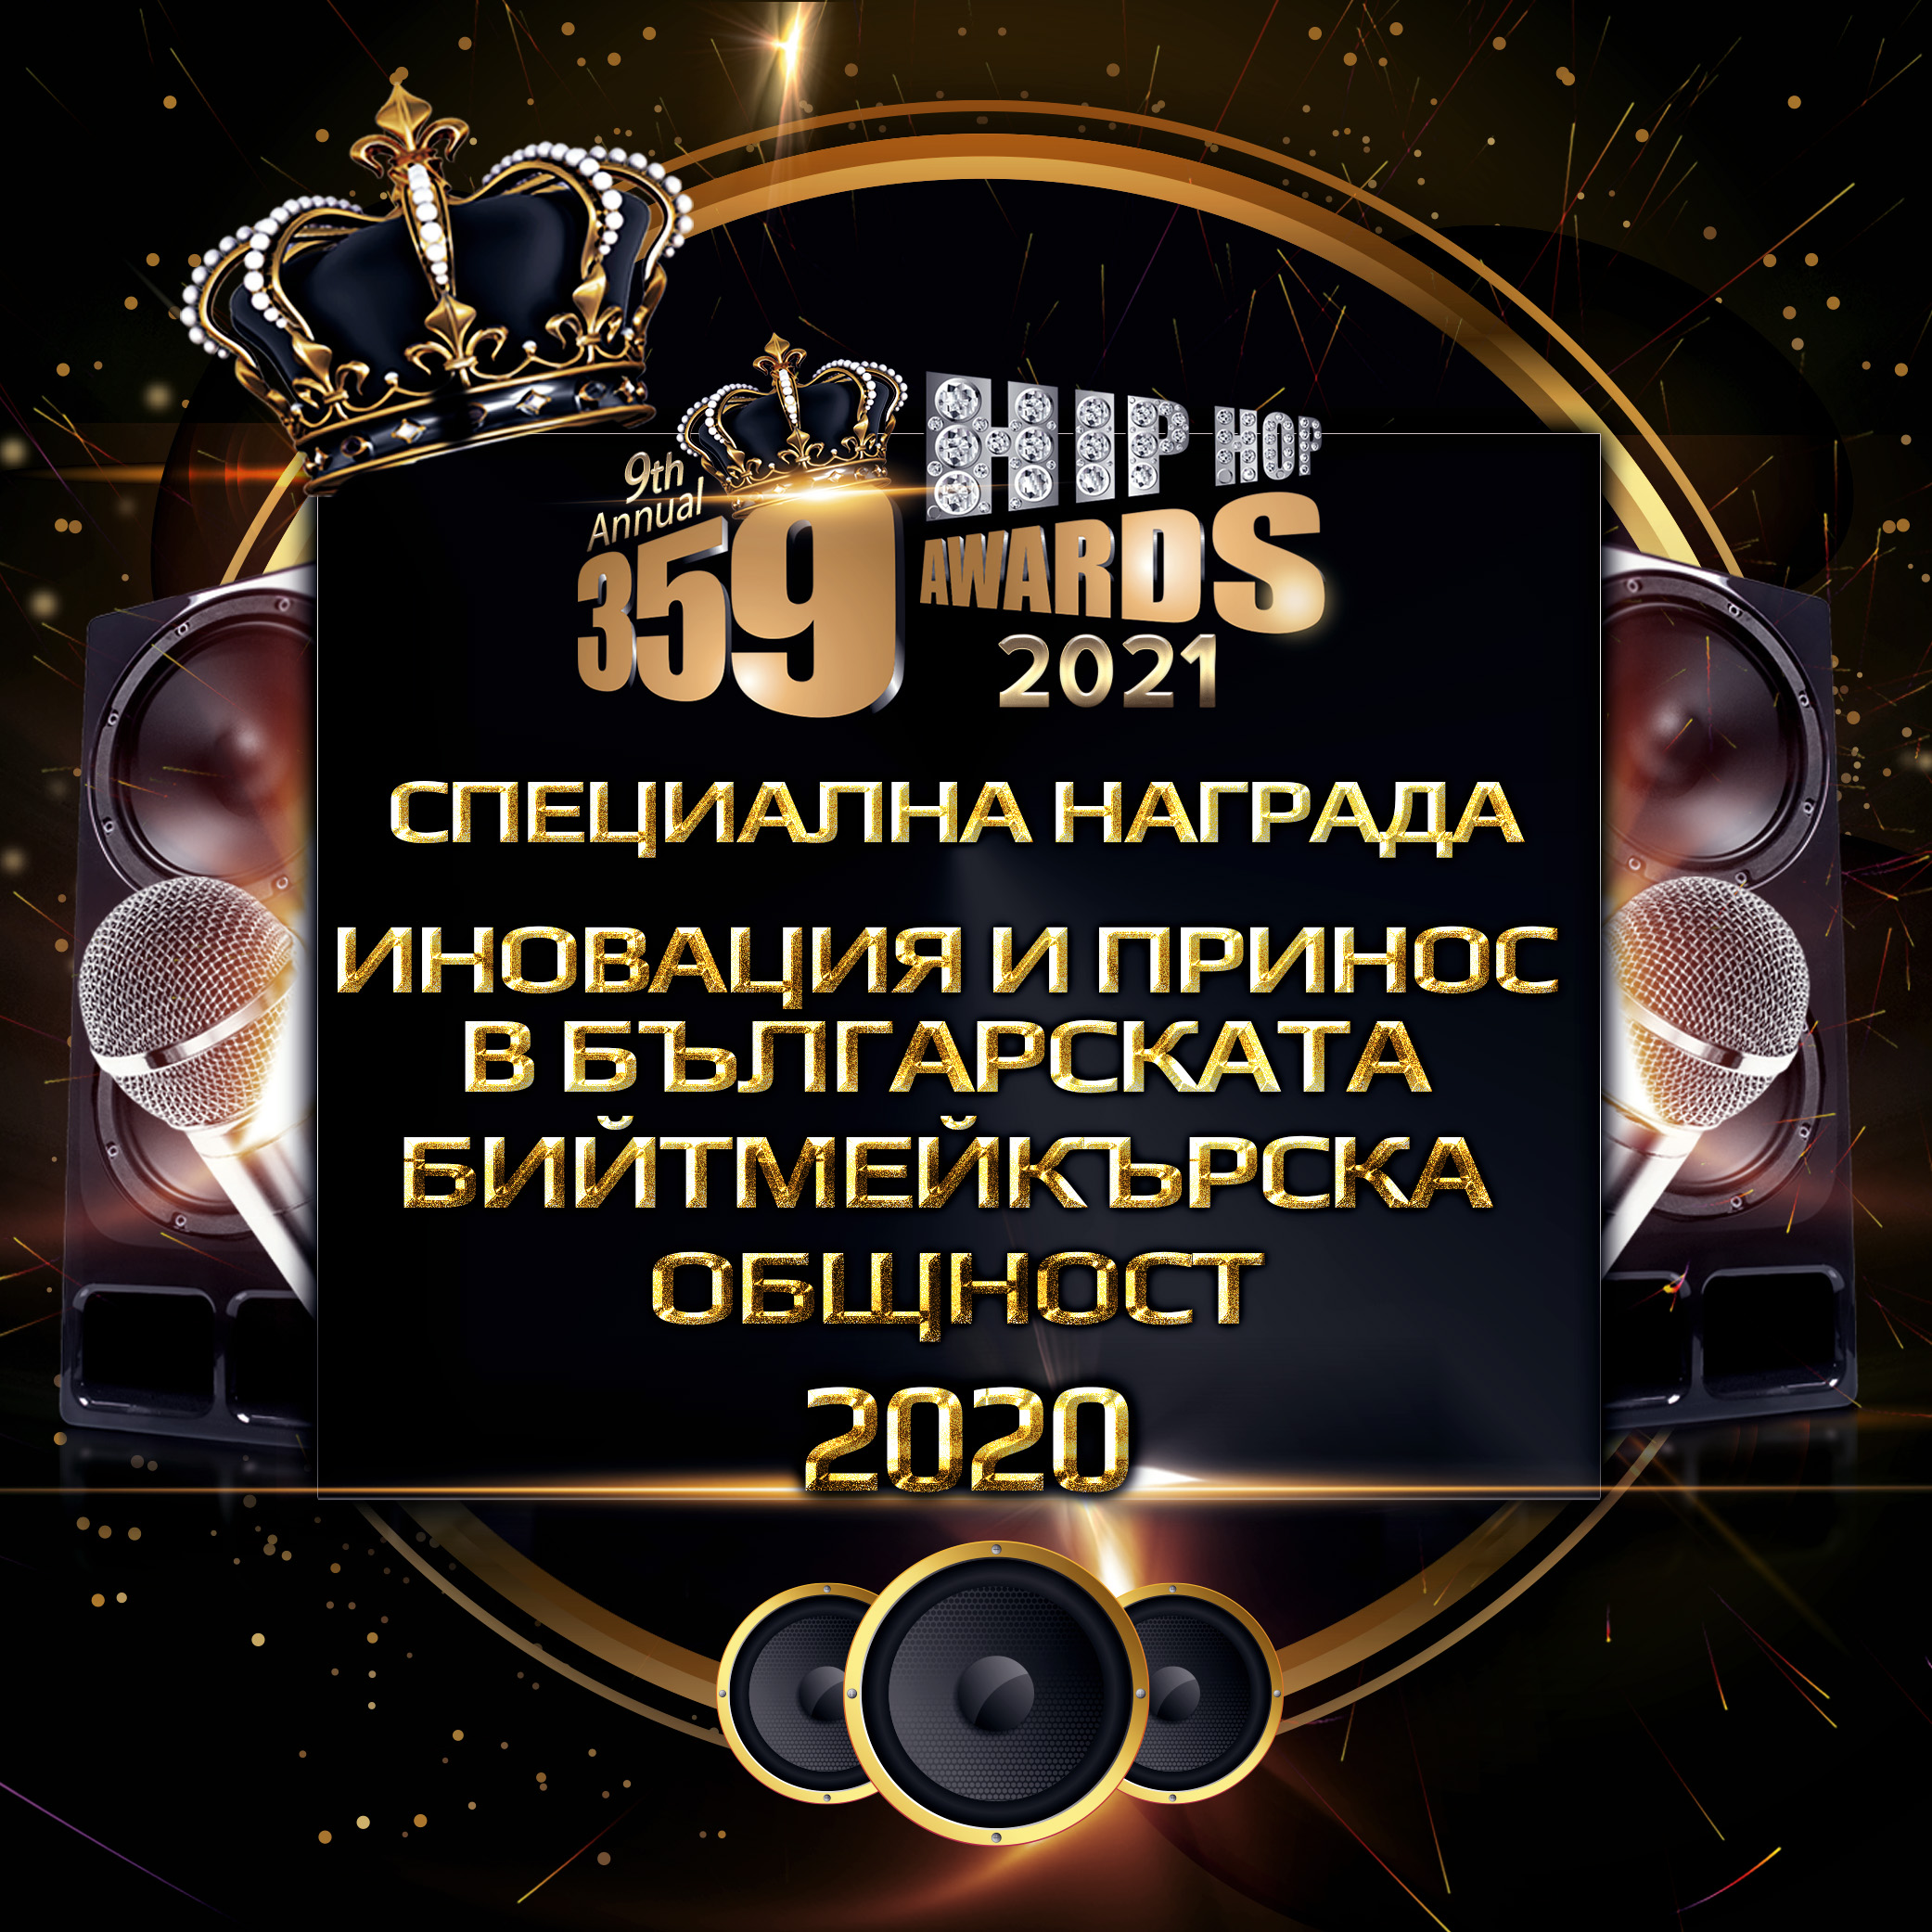 nominacii  359 awards 2021 specialna nagrada inovacija i prinos v balgarskata bijtmejkarska obshtnost  - Номинации